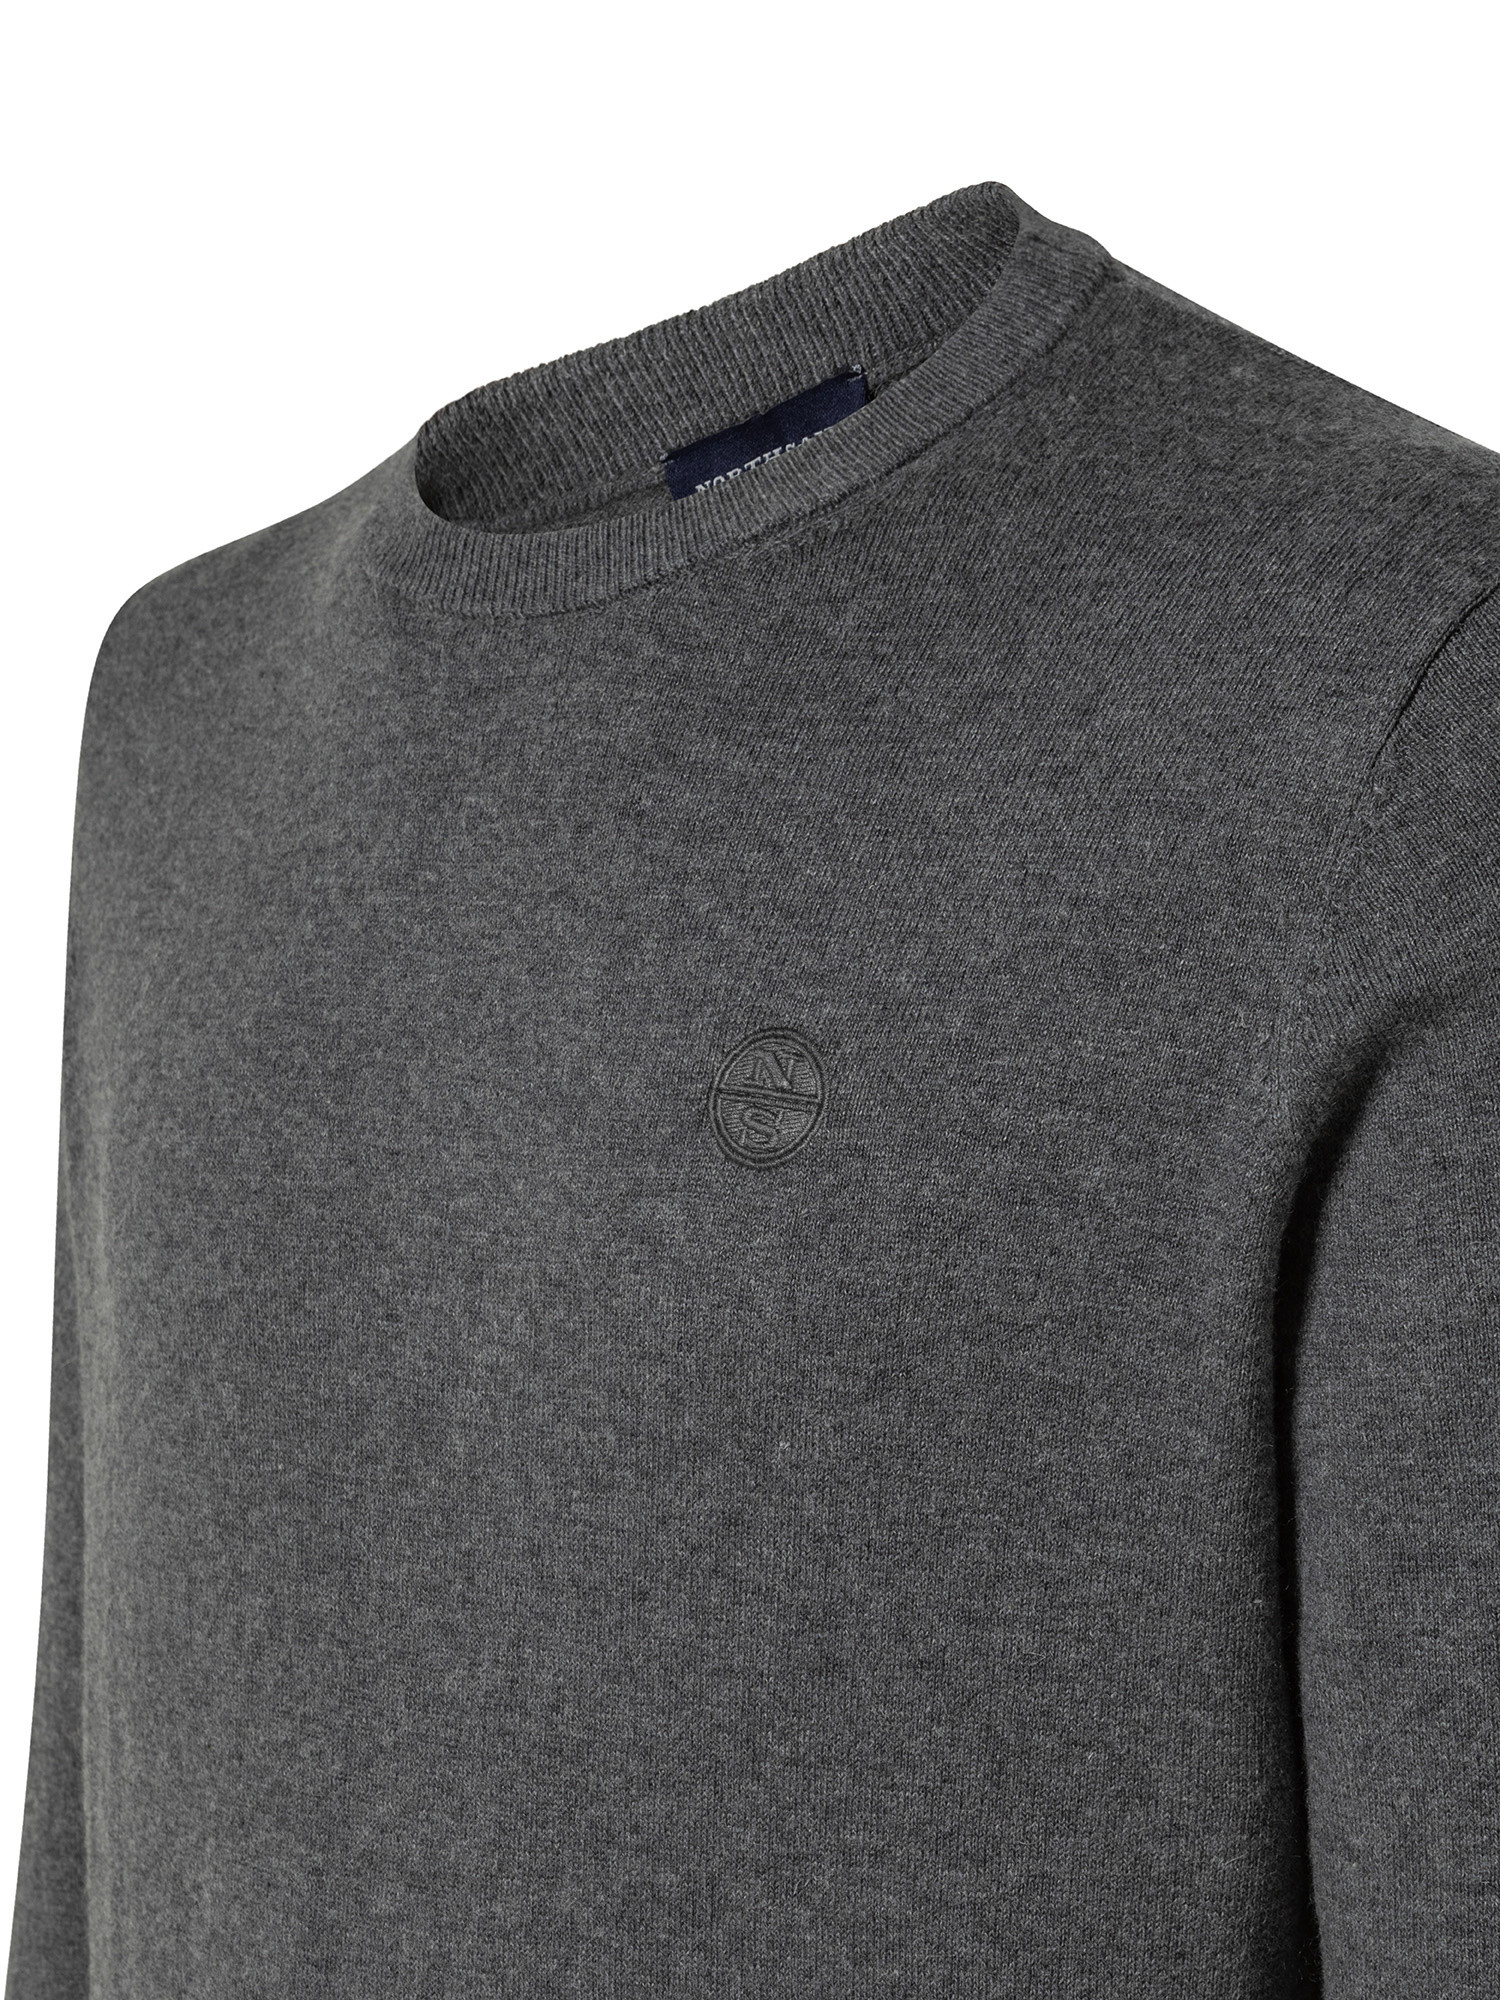 Organic cotton sweatshirt, Dark Grey, large image number 2